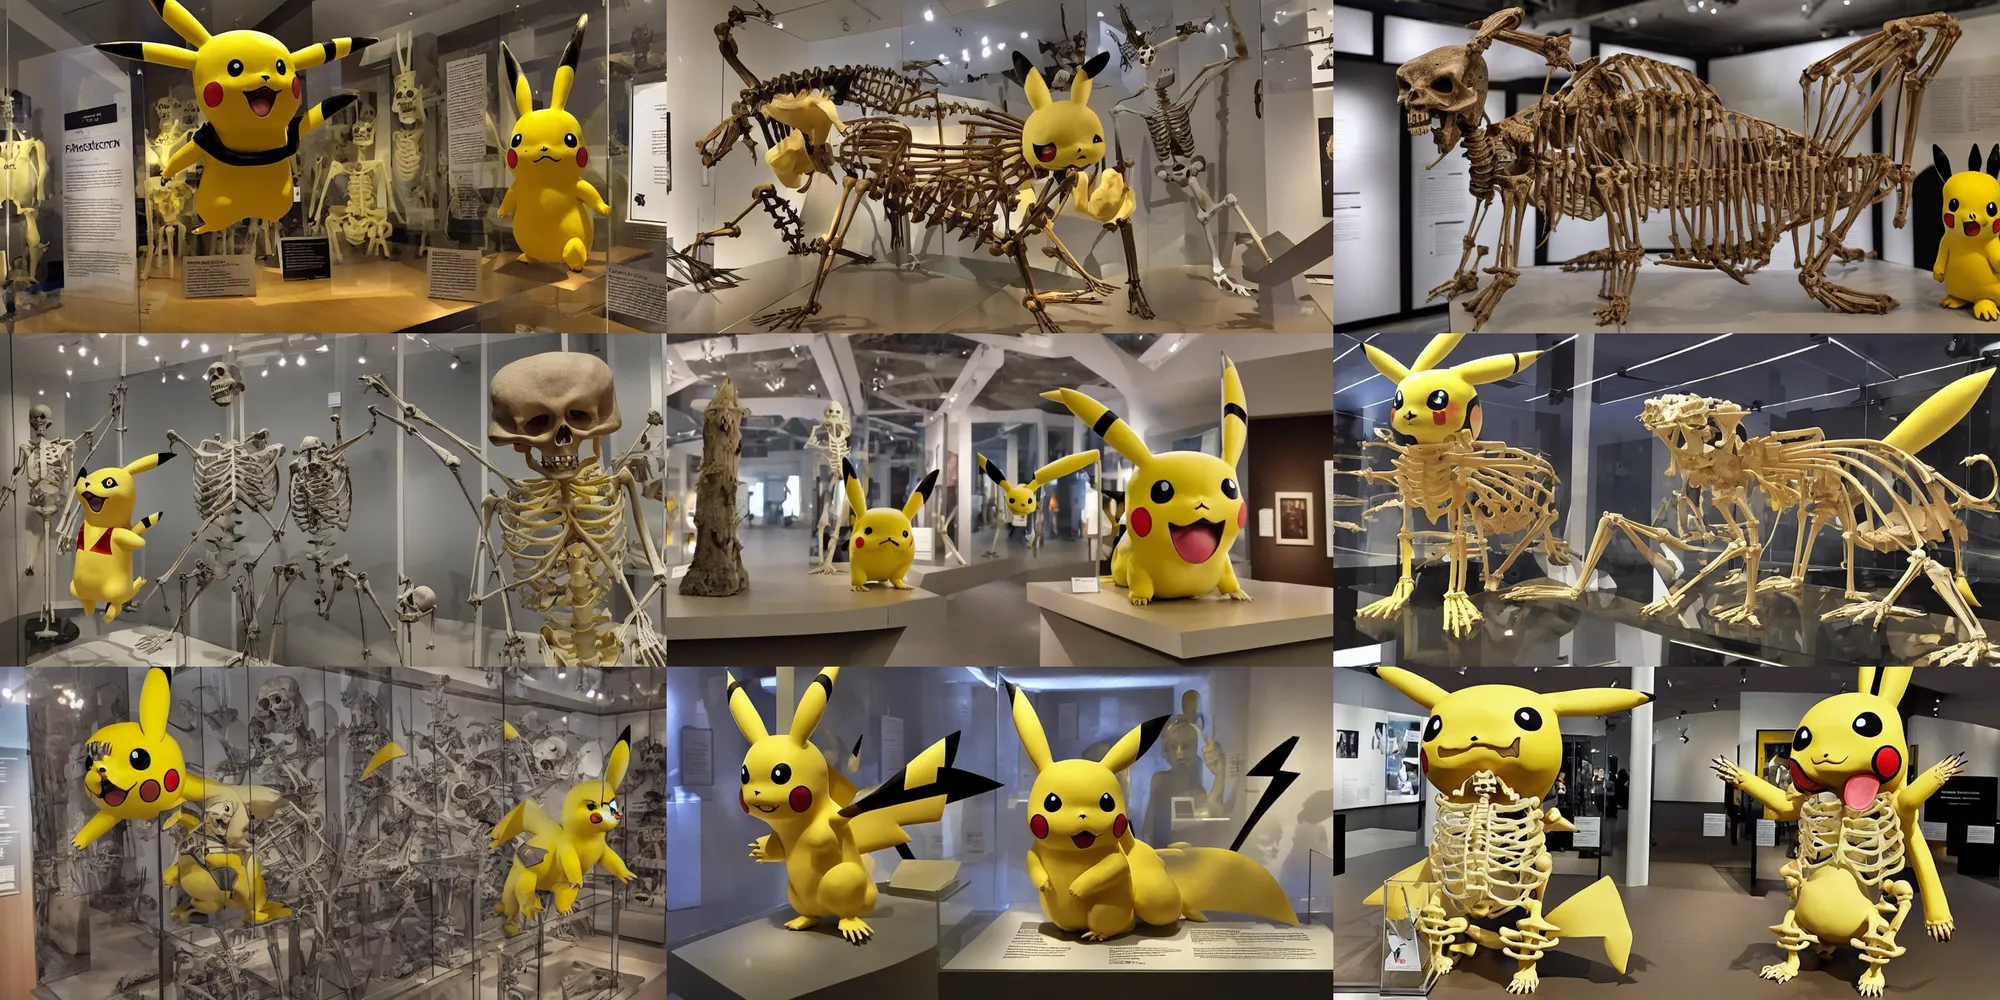 Prompt: pikachu skeleton on display in a museum